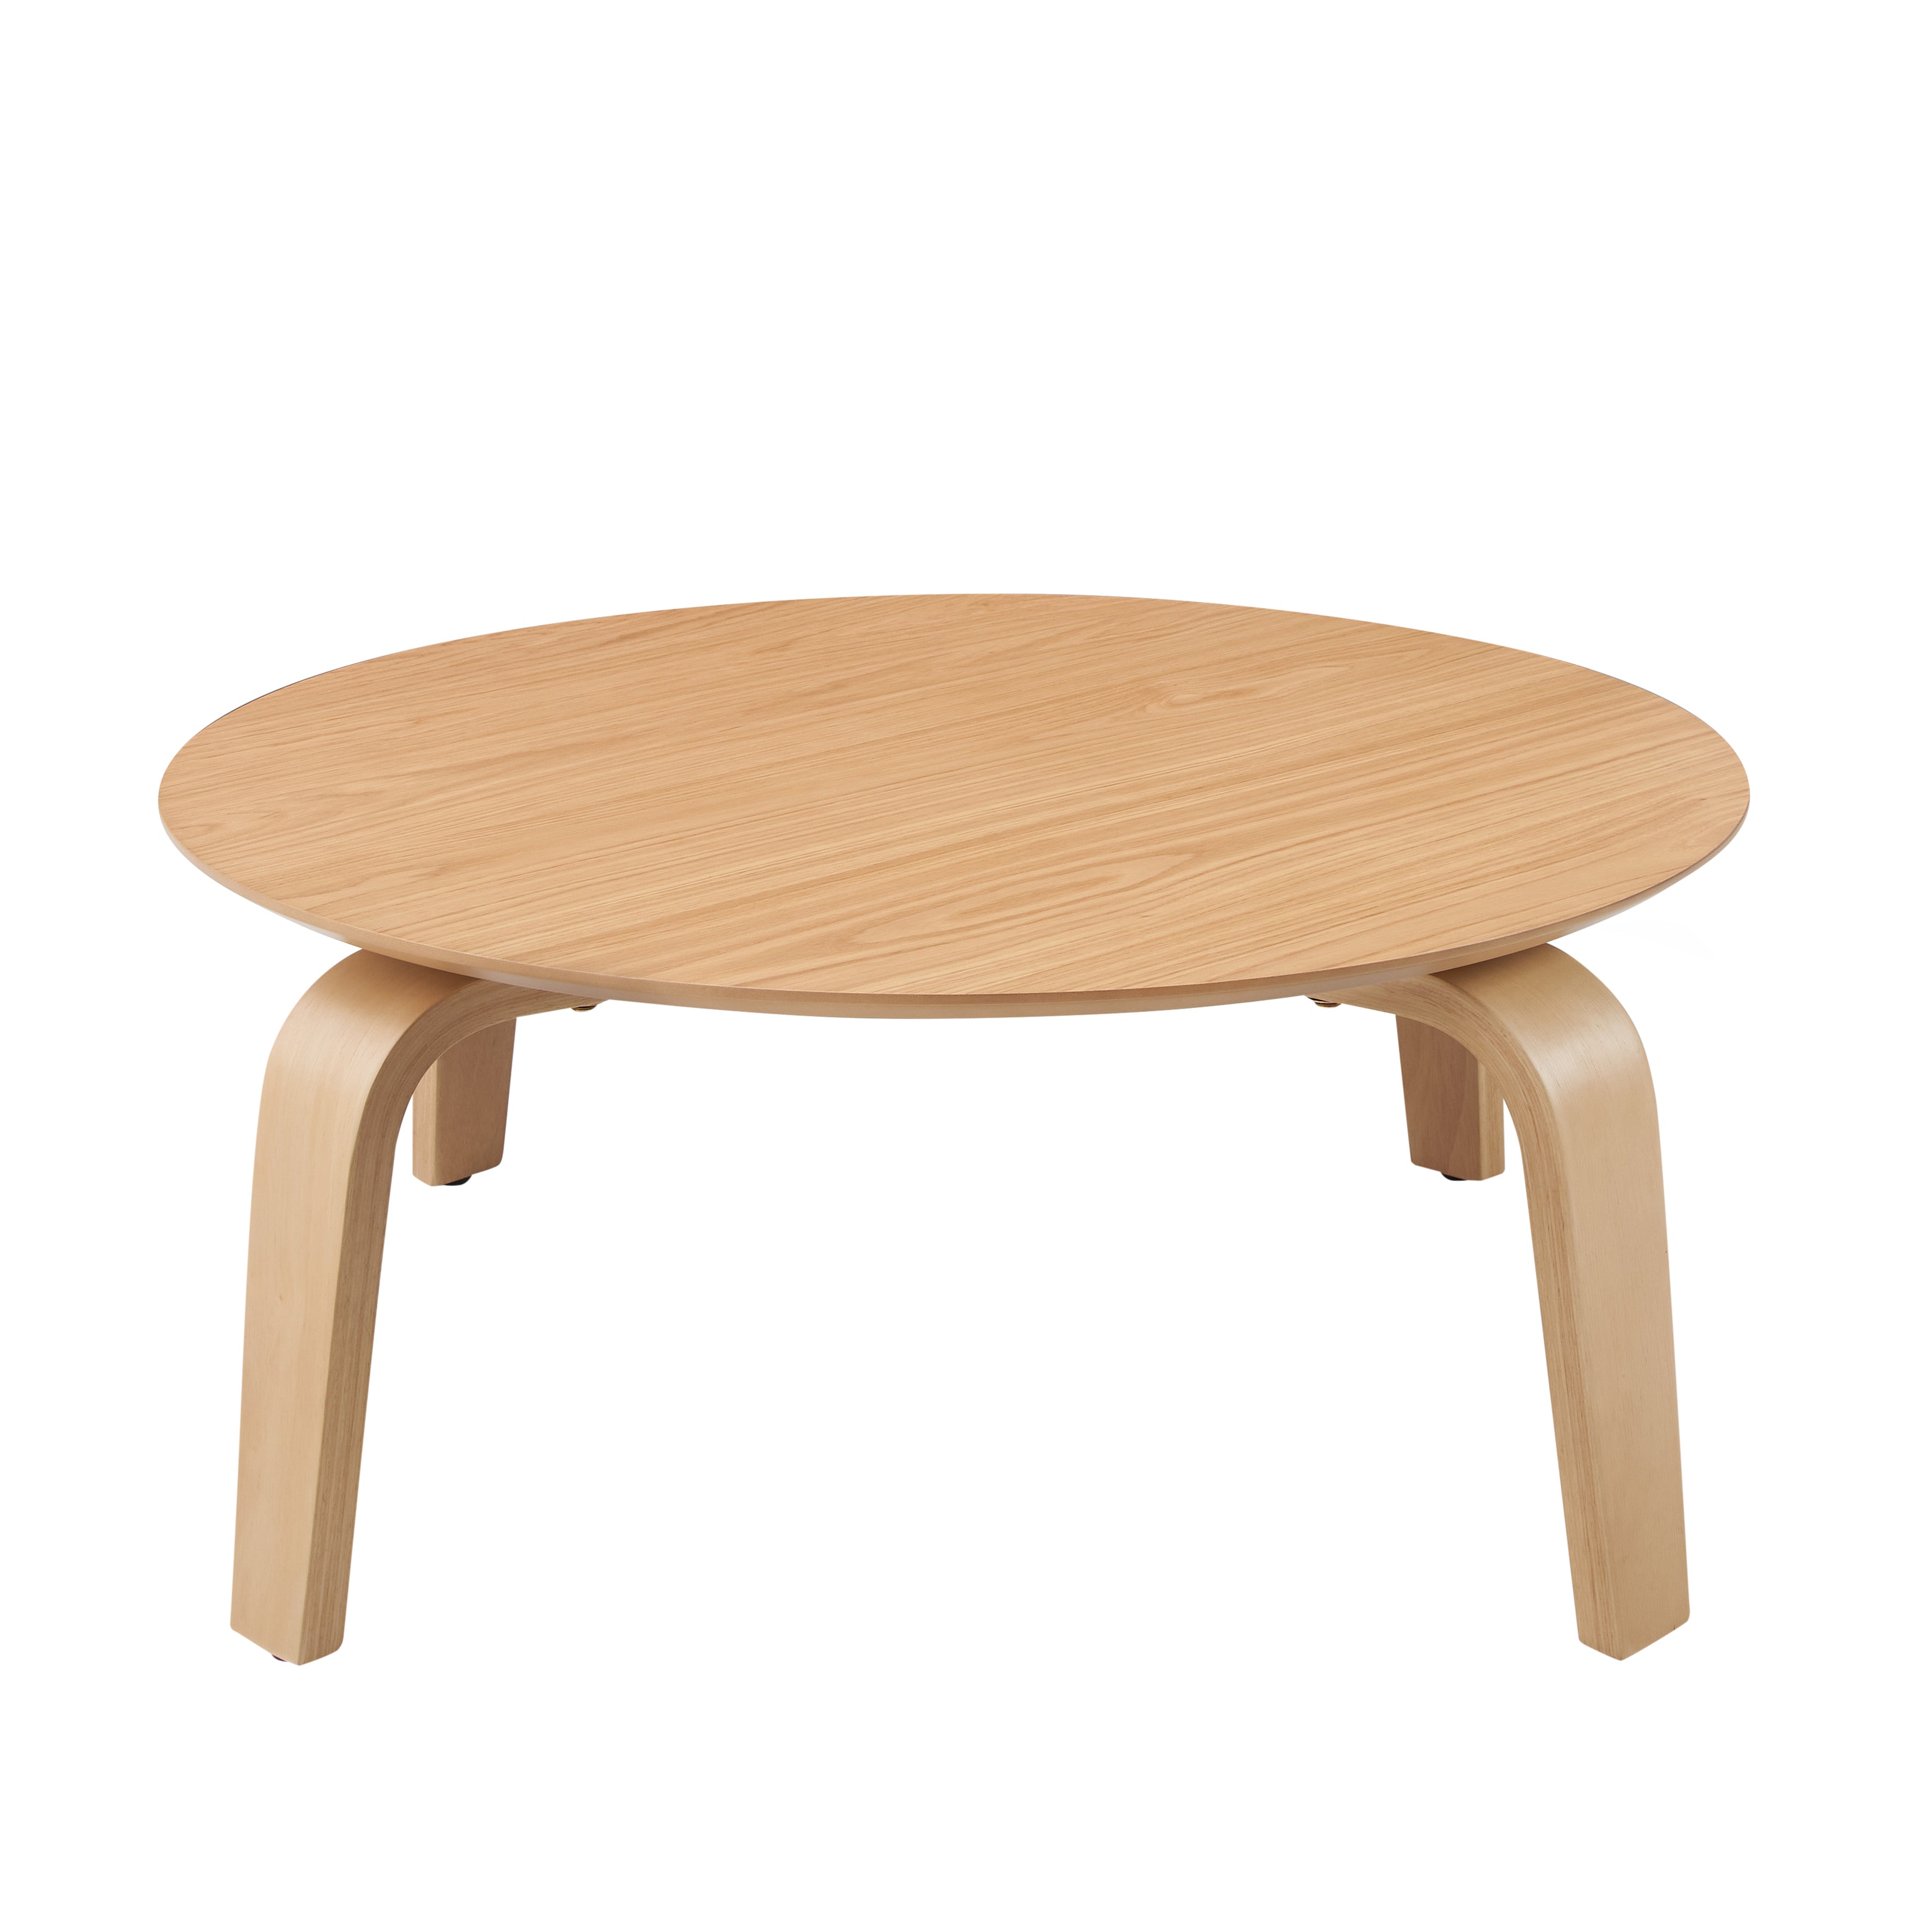 Mod Round Shape Mid-Century Wood Coffee Table - Oak